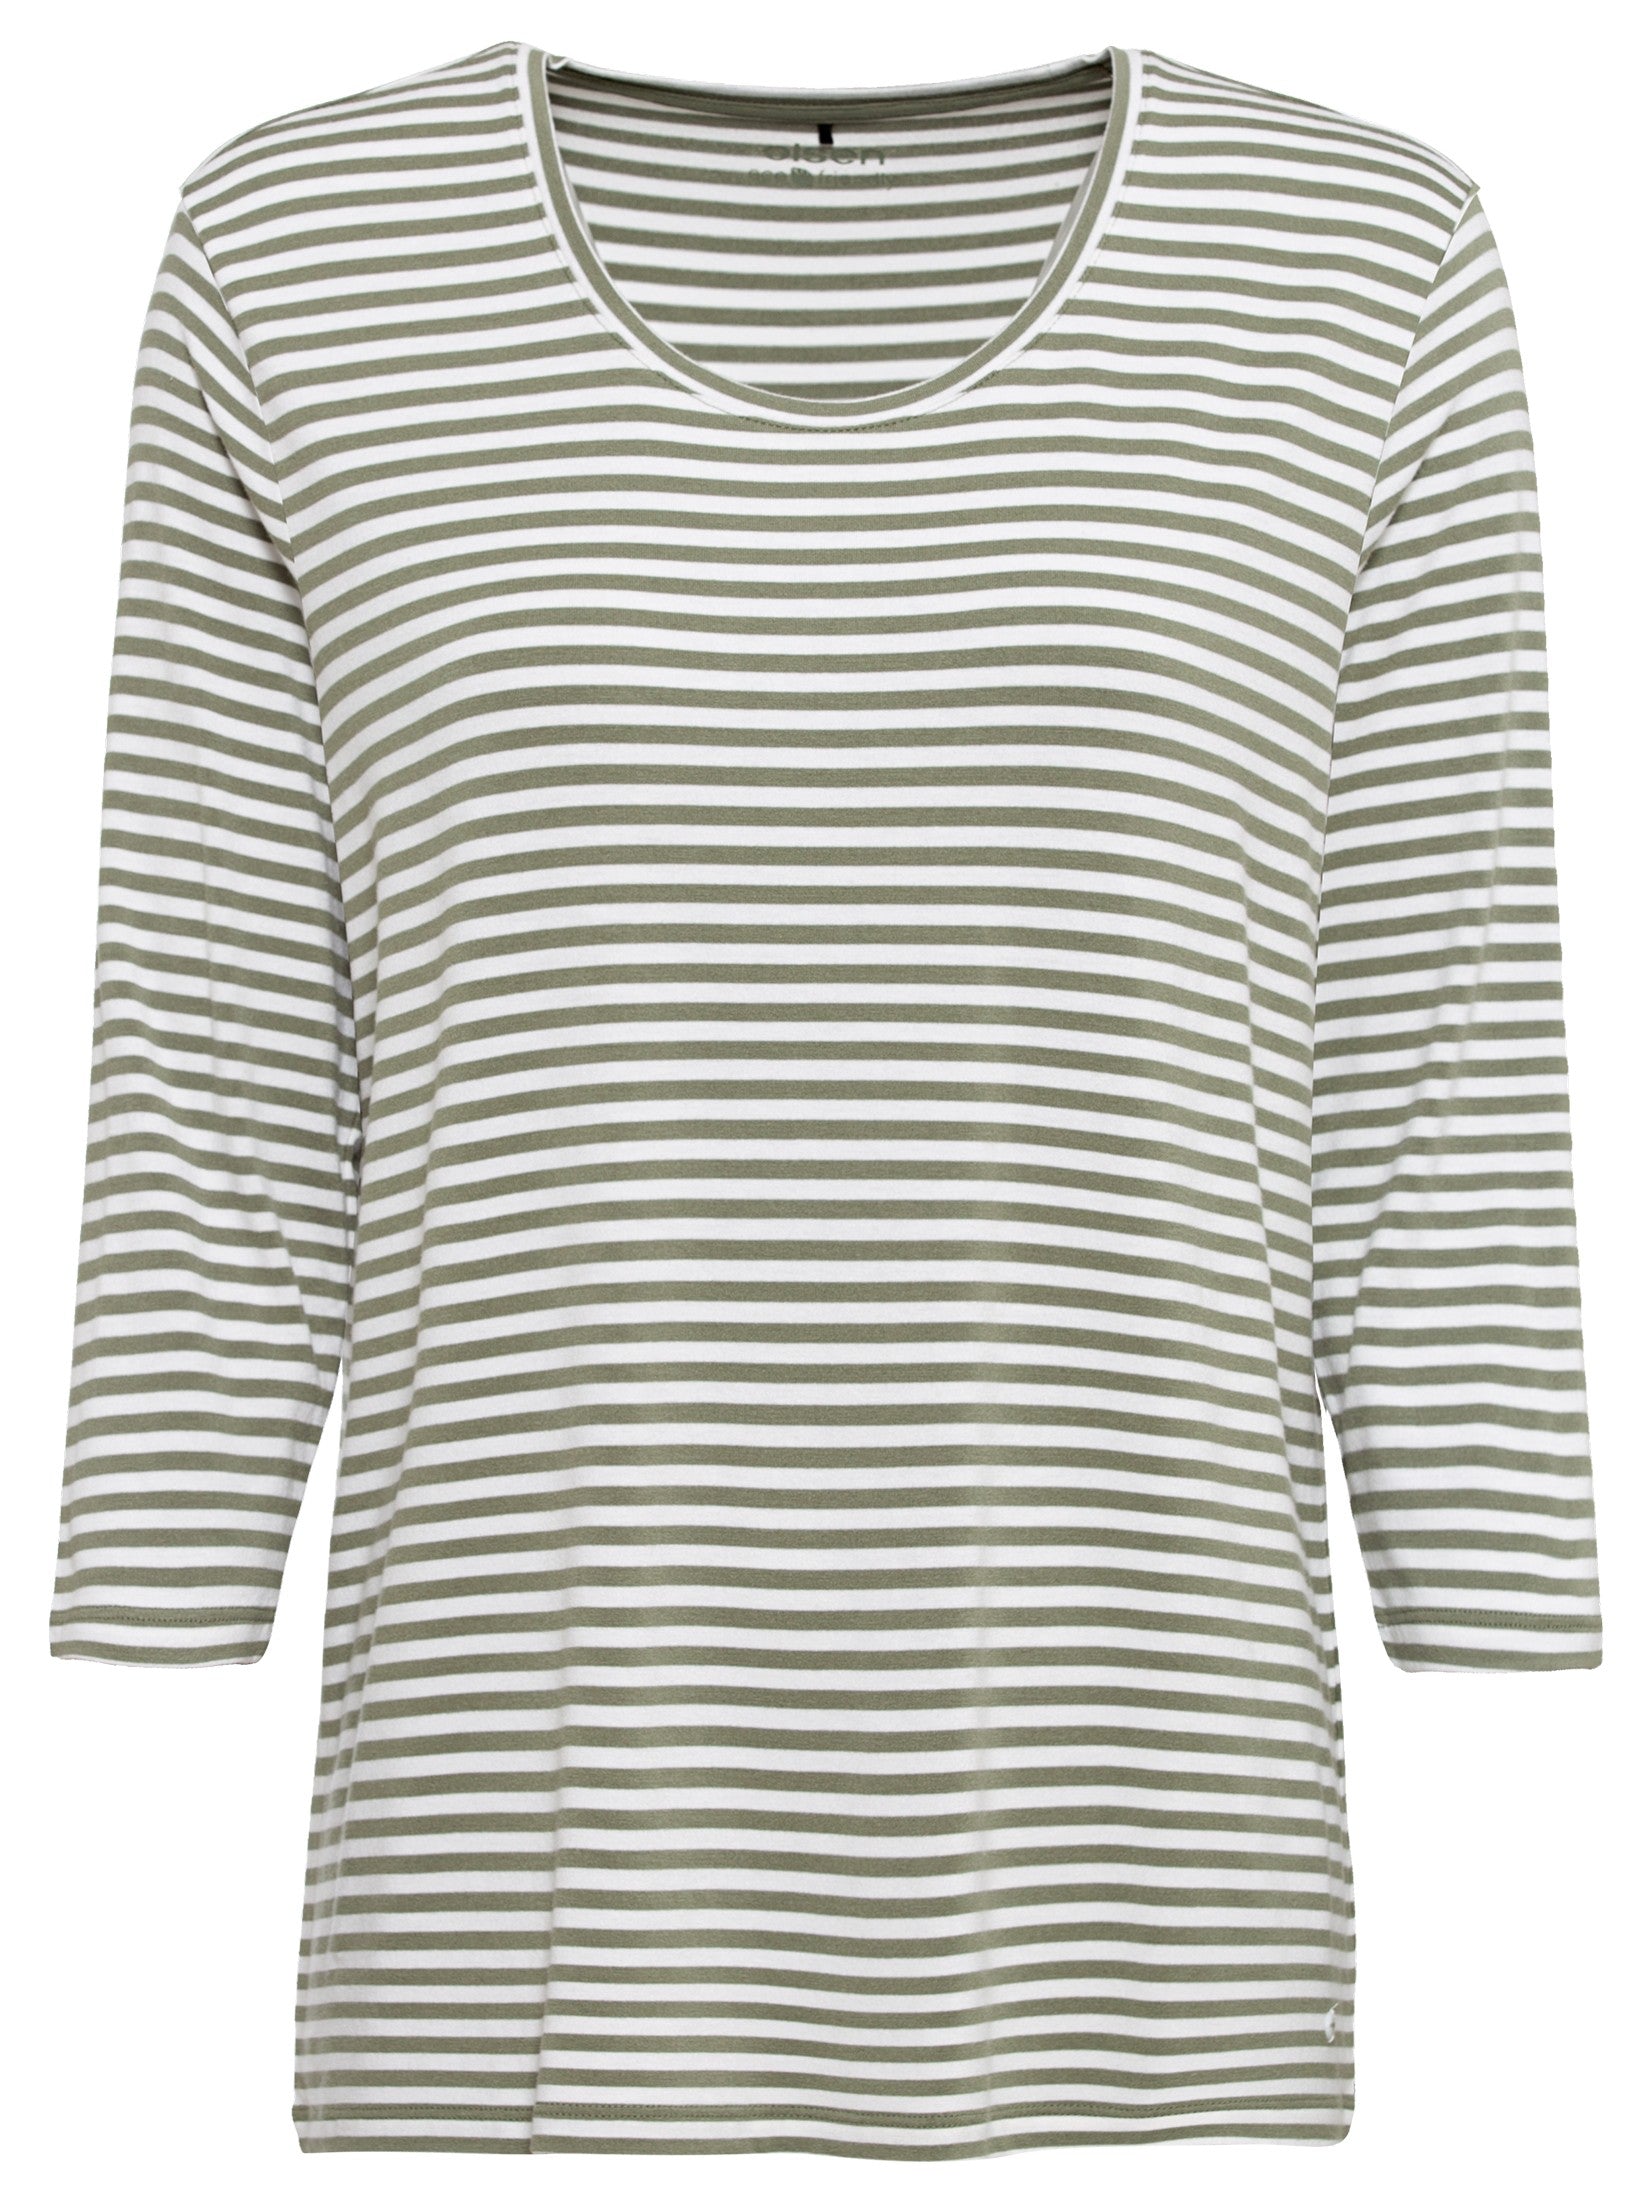 Olsen Striped Jersey Sage T-Shirt